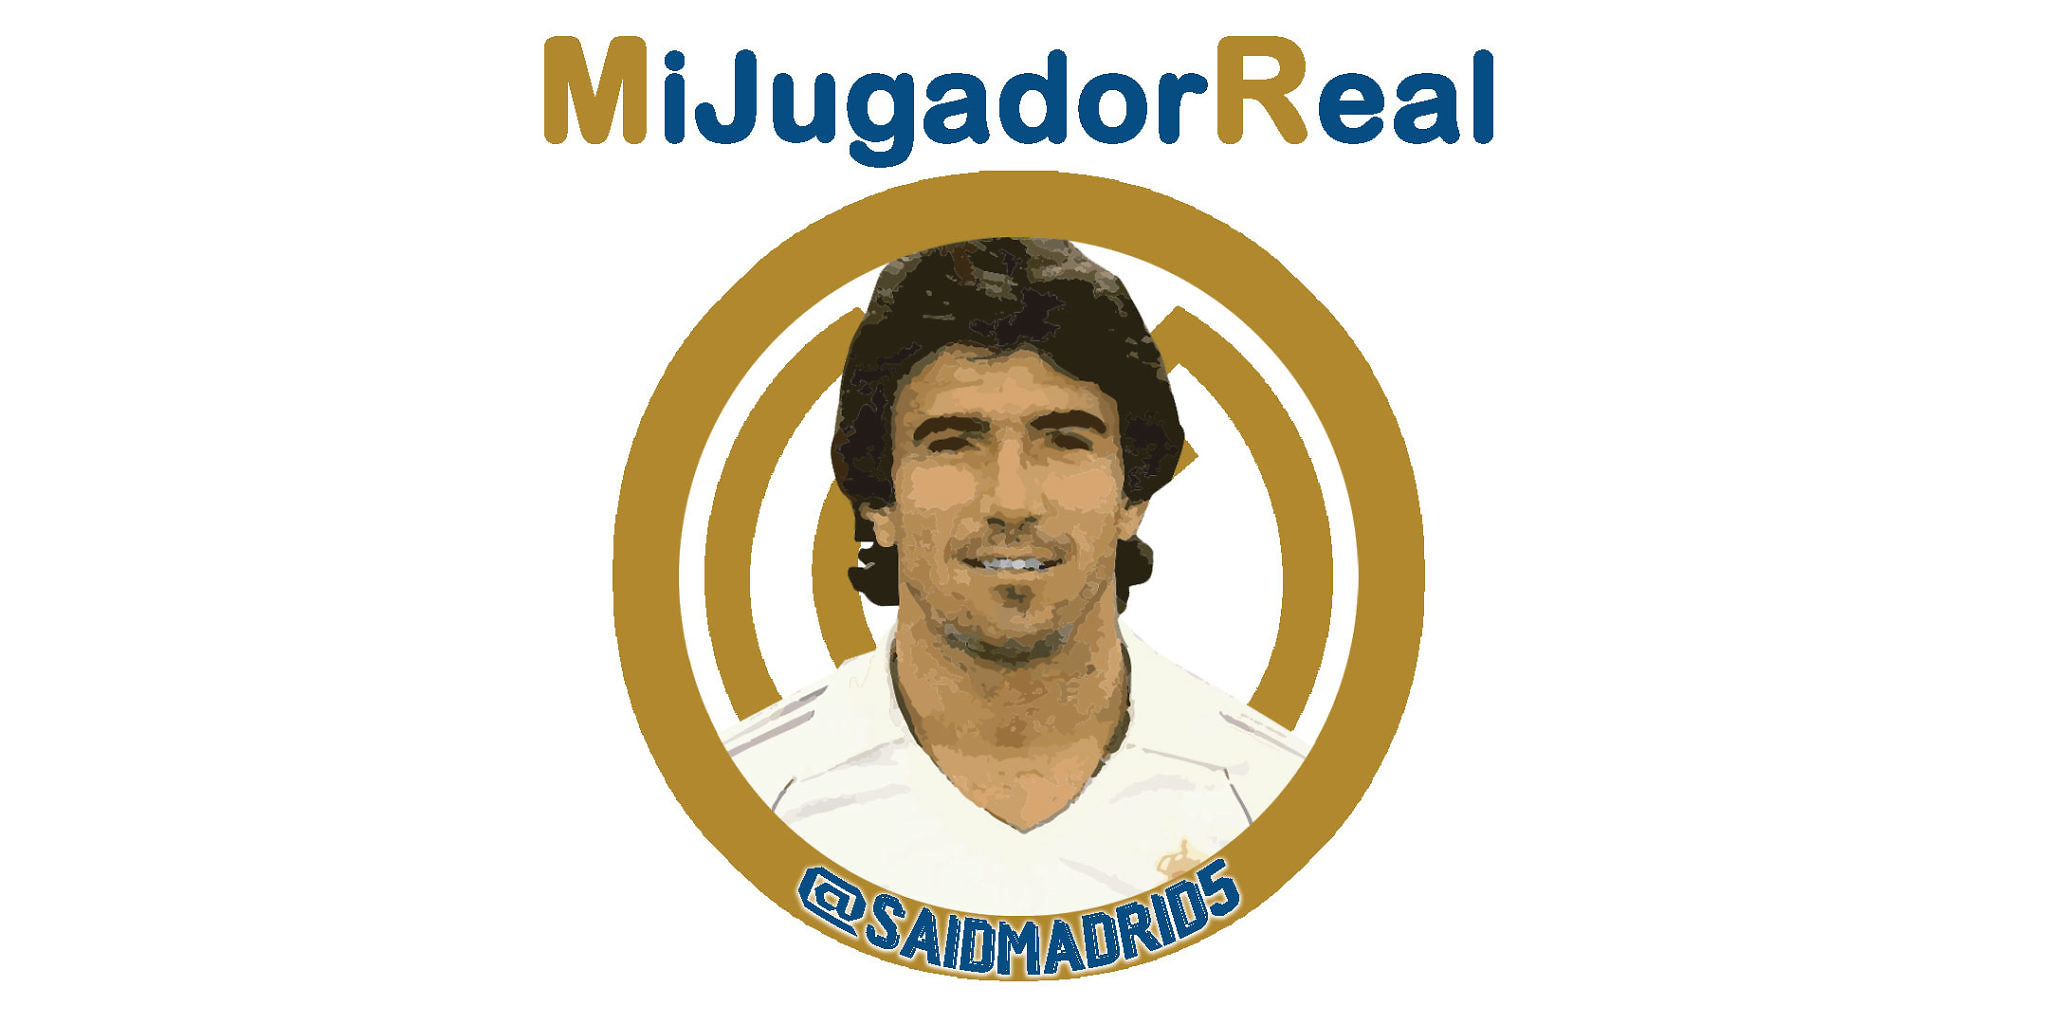 #MiJugadorReal | @saidmadrid5